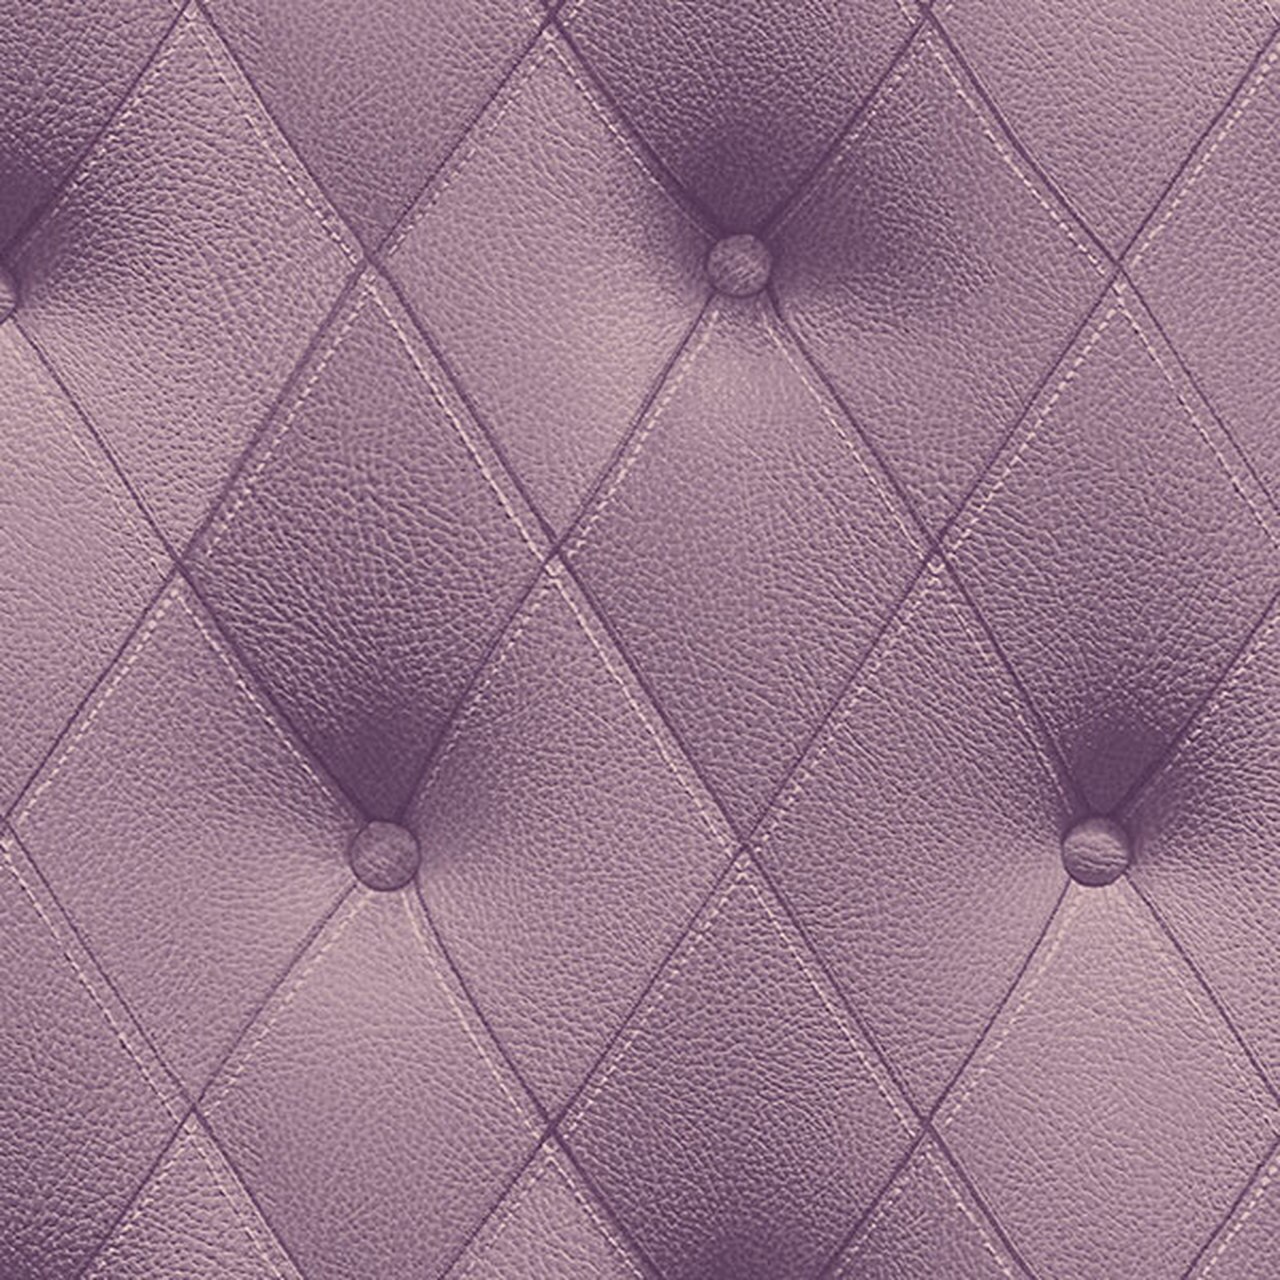 Diamond Pattern Button - HD Wallpaper 